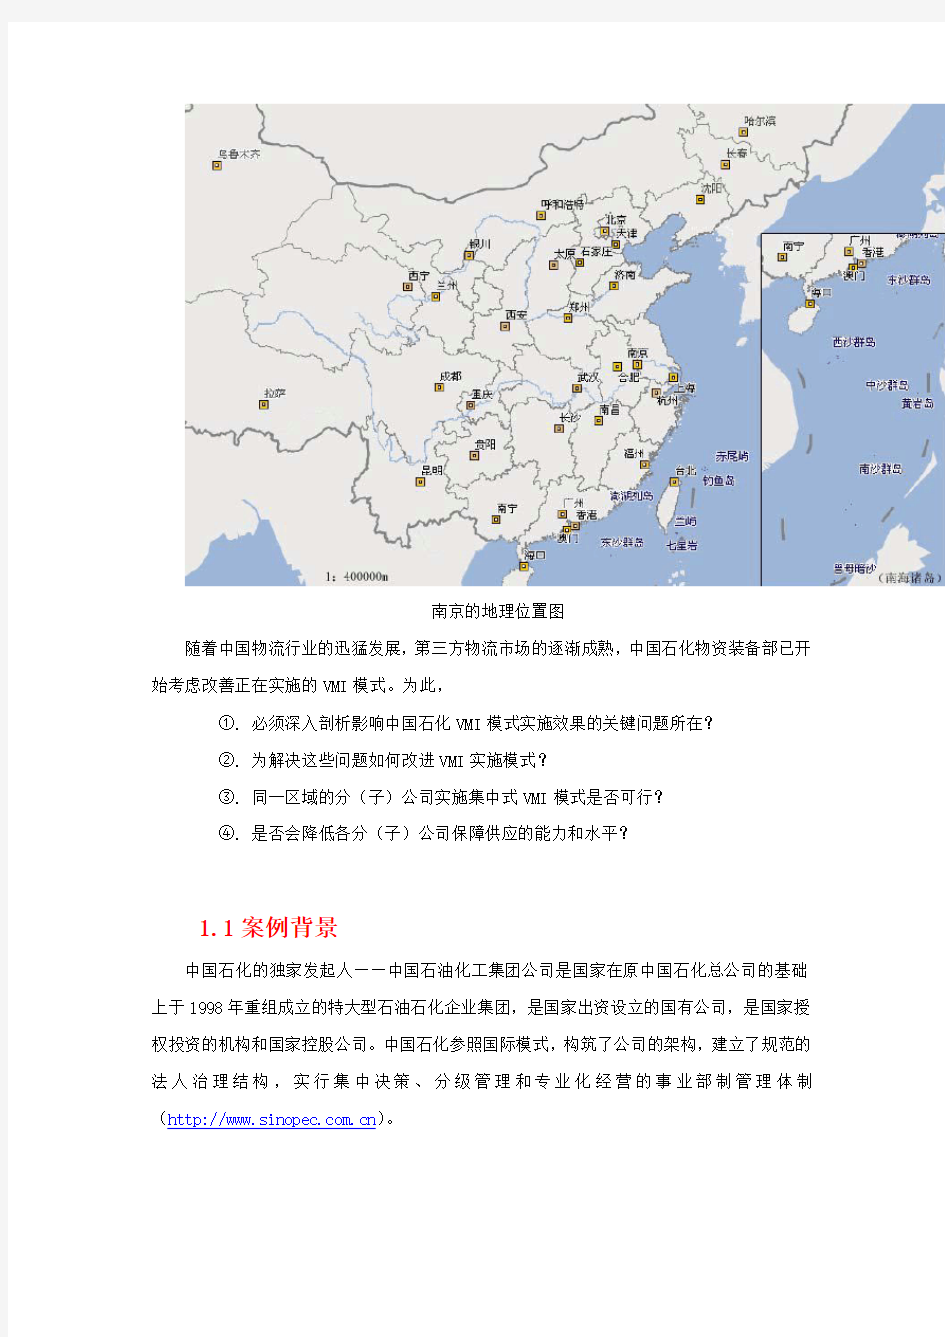 中国石化VMI实施模式--案例